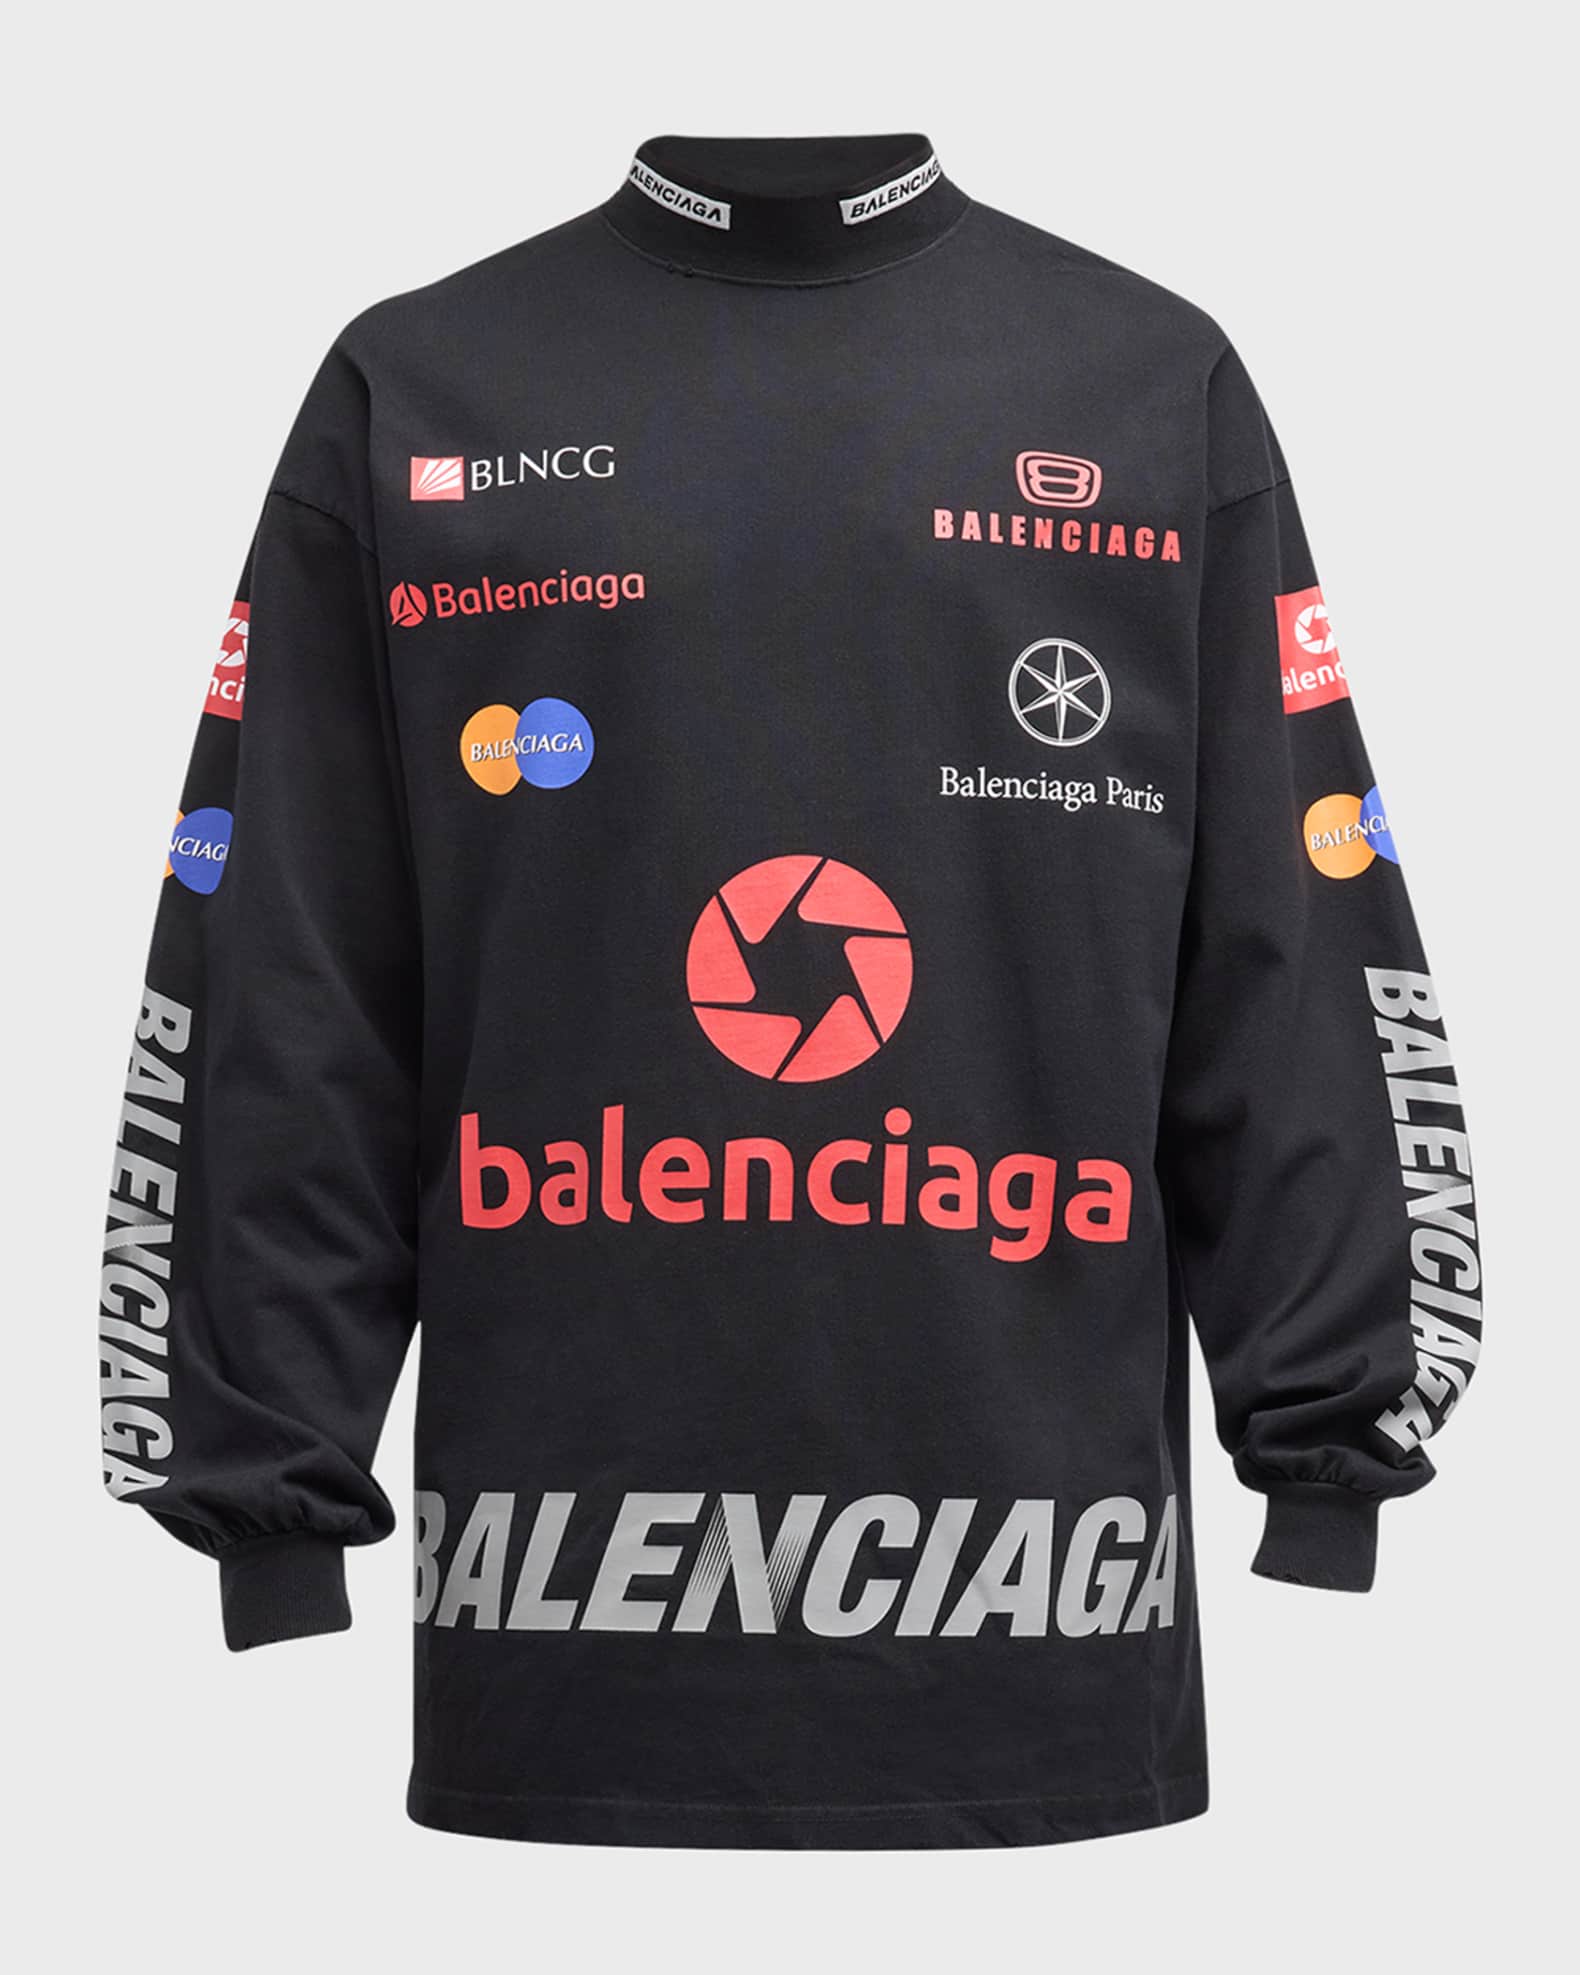 Balenciaga Tops & T-shirts, Men, Women & Kids